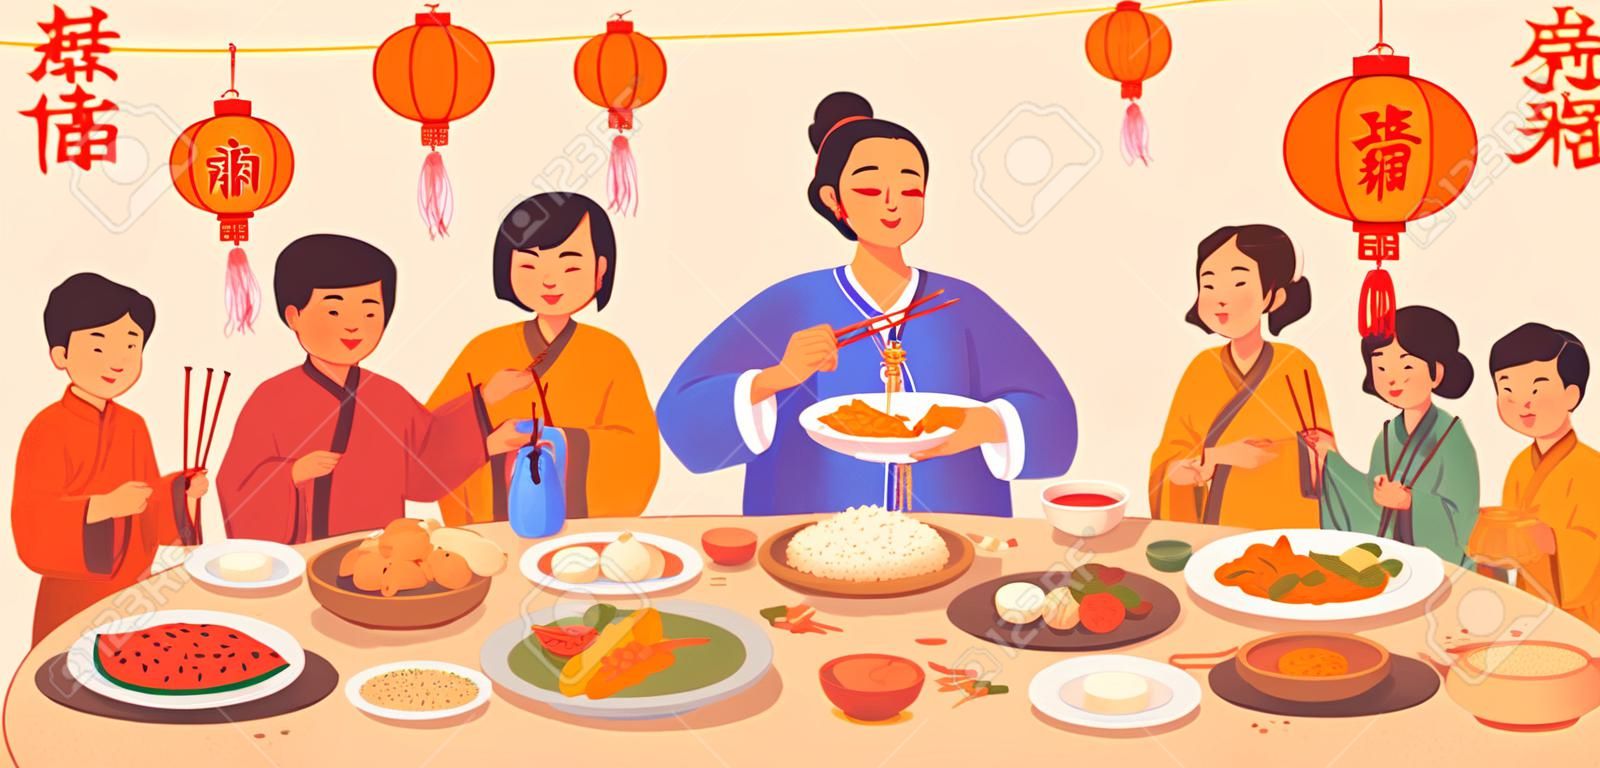 Tradução de texto do Ano Novo Chinês, jantar de gala com comida em pratos e pessoas mãos segurando pauzinhos, decoração de lanternas vermelhas. Pratos tradicionais de cozinha da China, peixe e arroz, bolinhos, legumes